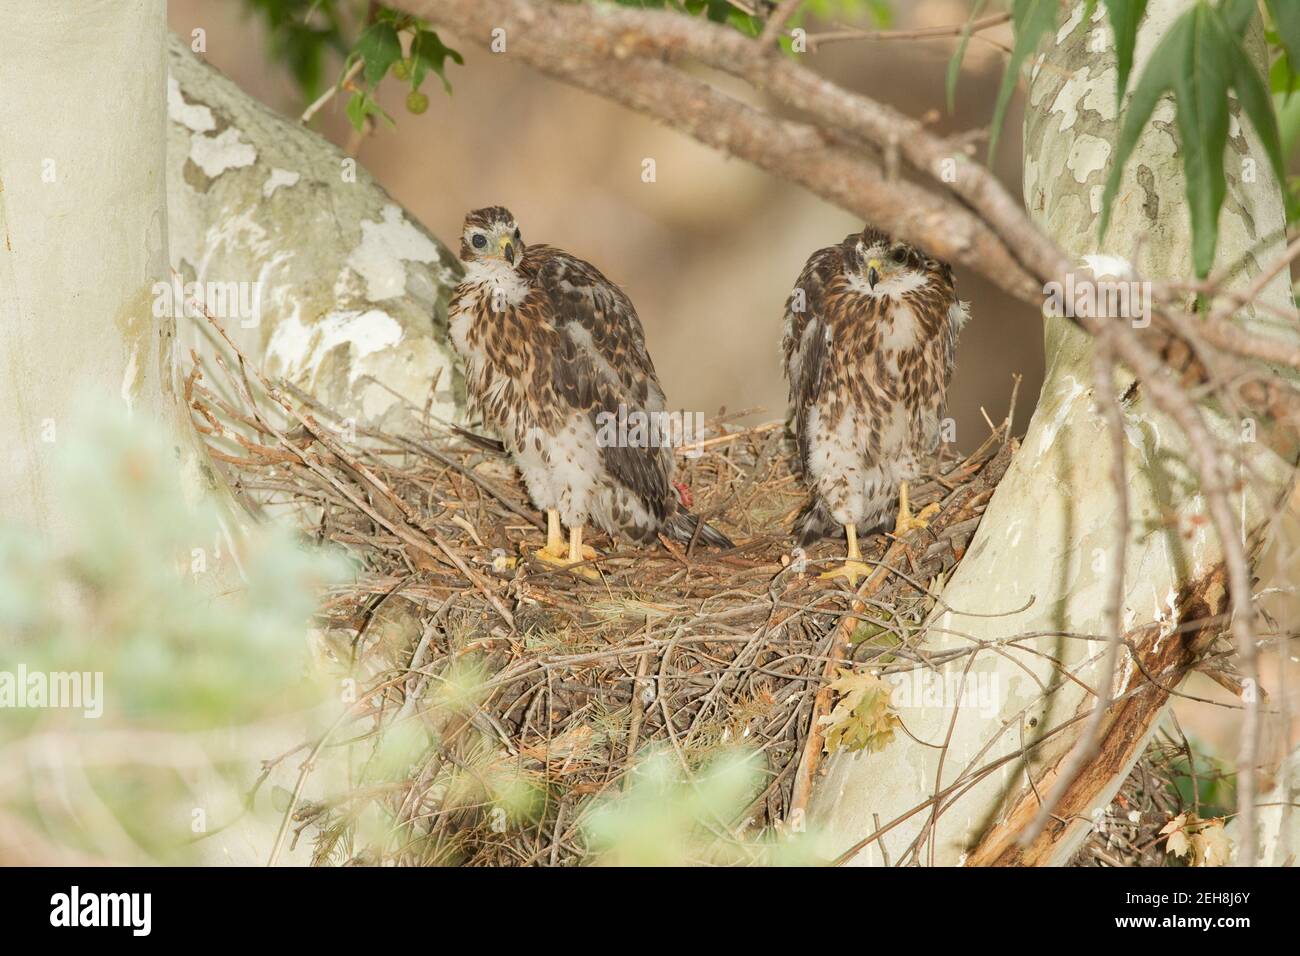 Nördliche Goshawk Nestlinge, Accipiter gentilis, fressen Vogel beim Nest in Platanen Baum. Stockfoto